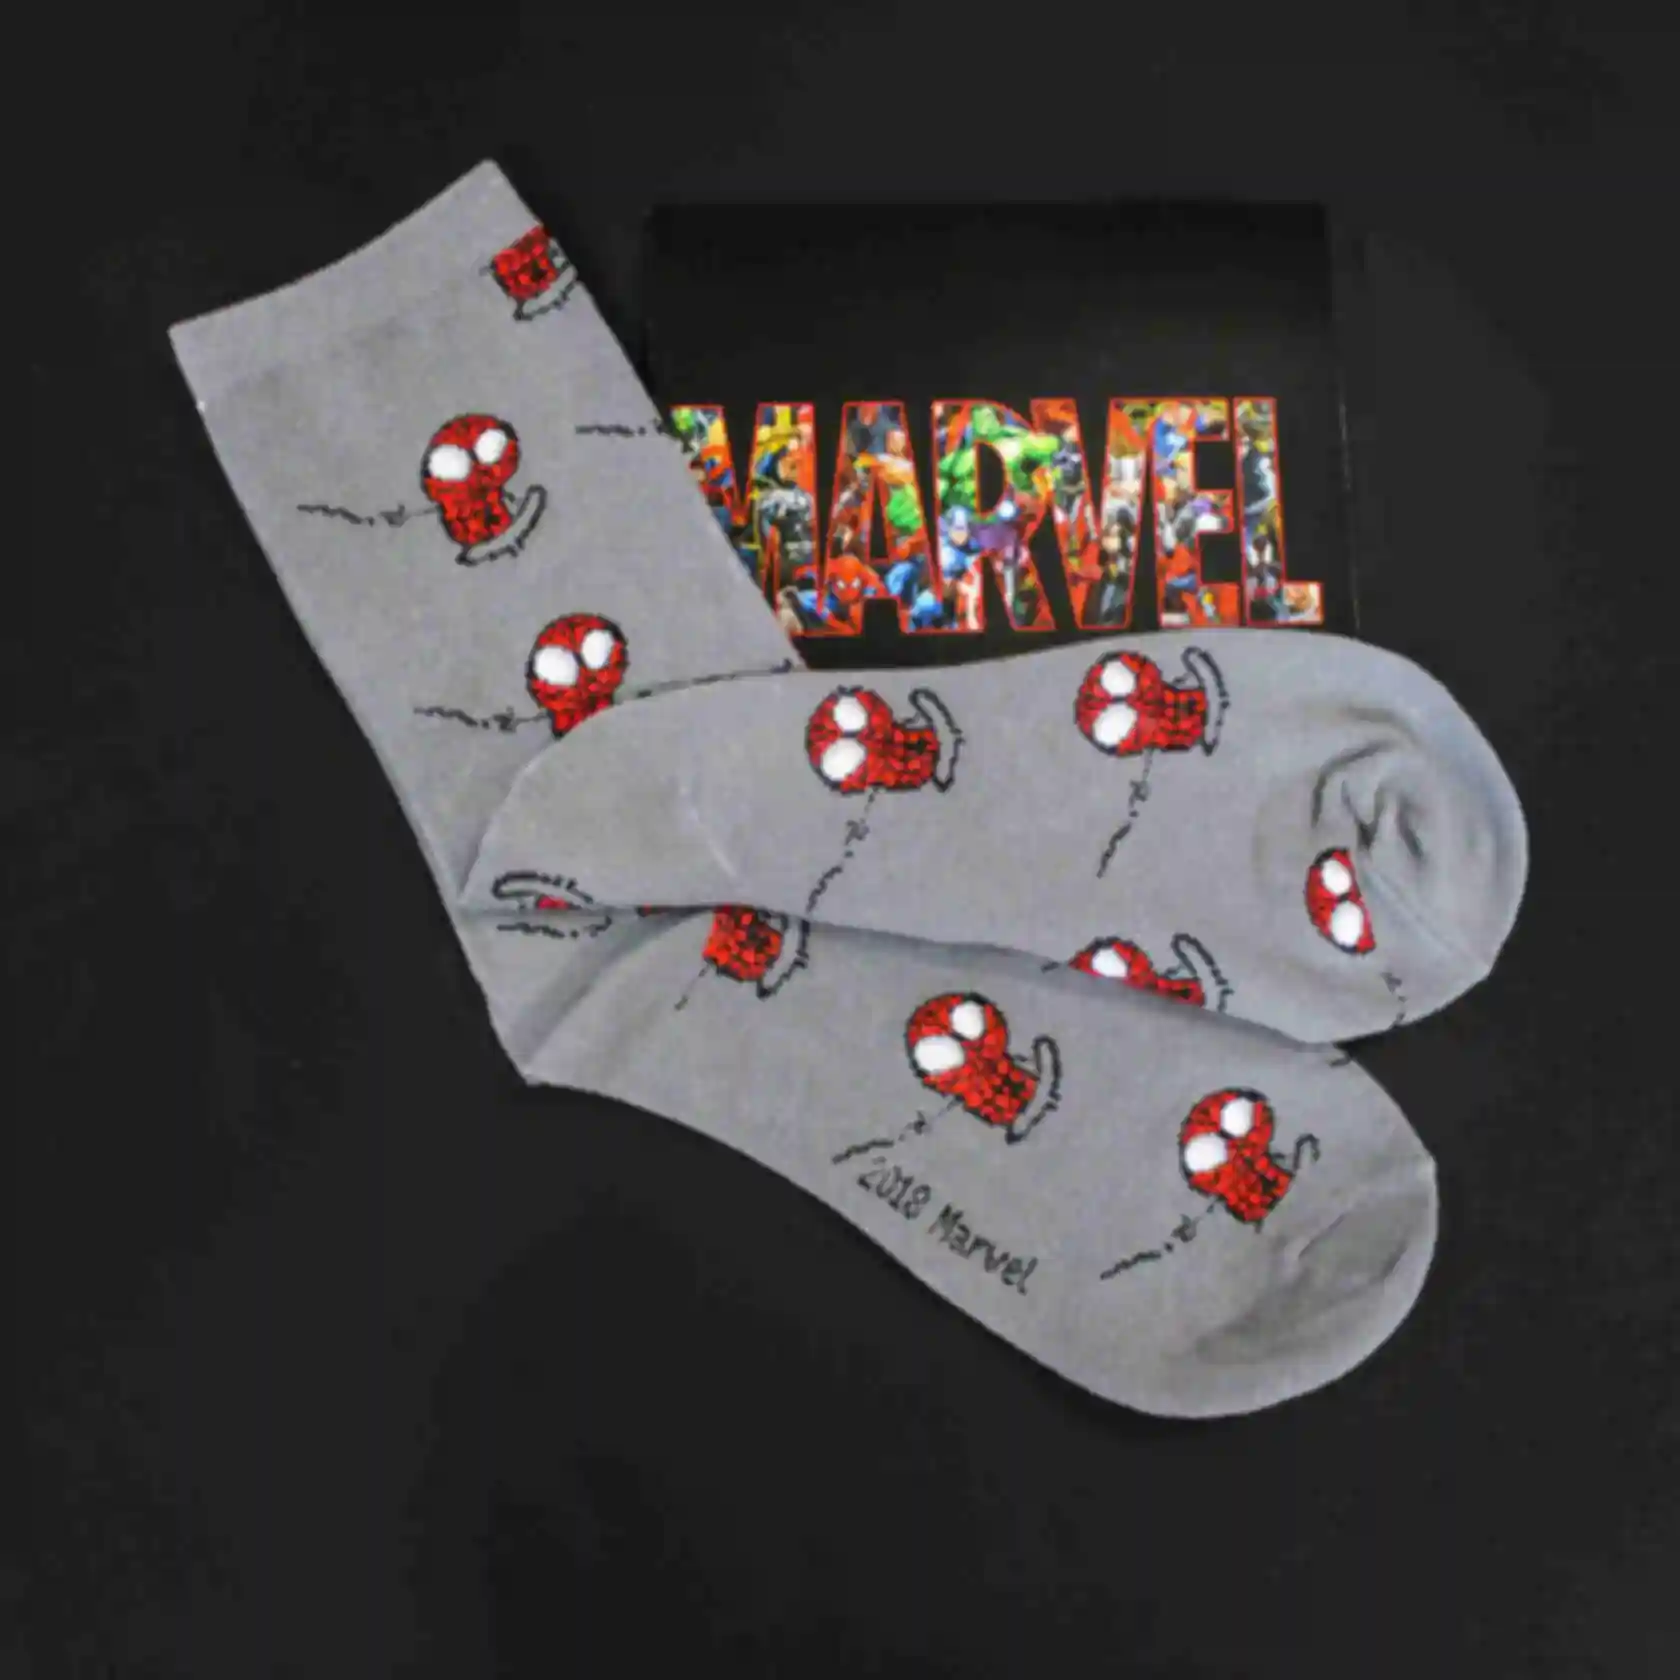 АРХИВ Супергеройские носки с Человеком Пауком • Одежда Spider Man • Marvel • Подарки Марвел